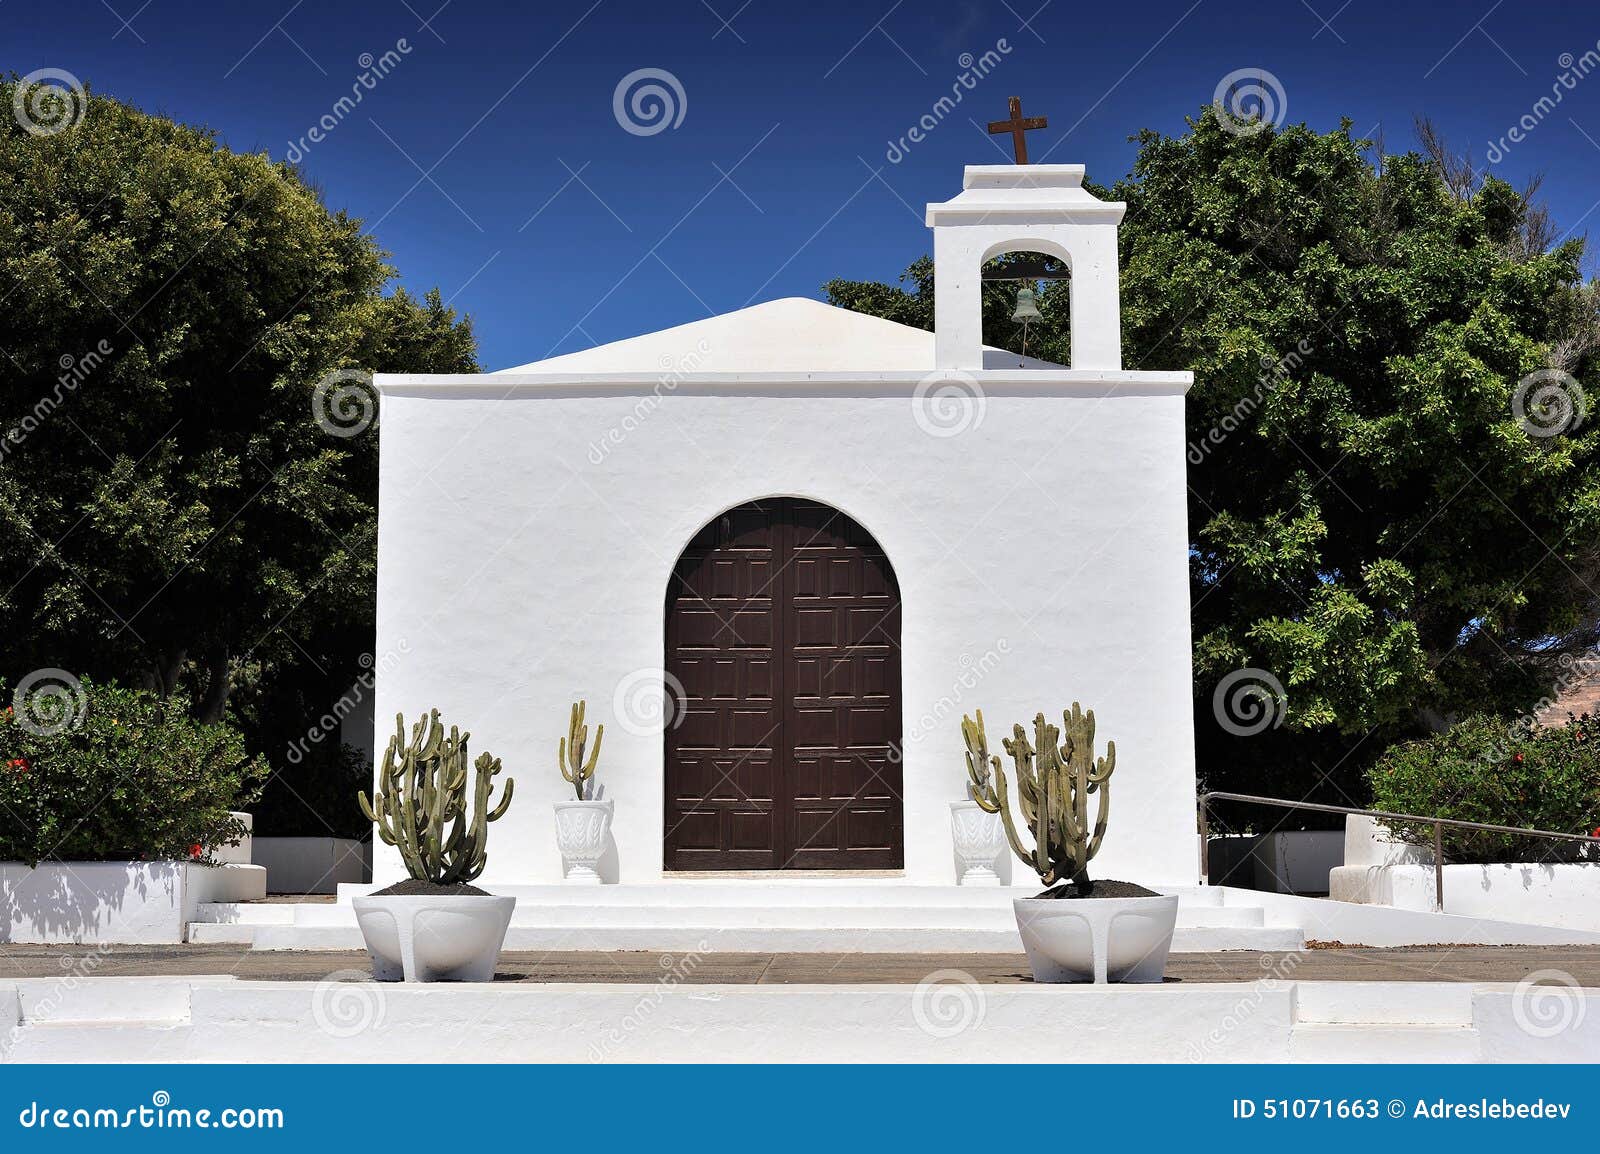 church of nuestra senora del carmen, arrieta, lanzarote island,